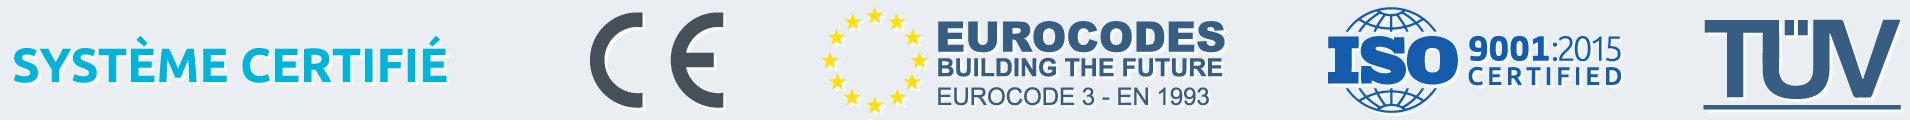 Système de construction certifié - CE, Eurocode 3 - EN 1993, ISO 9001:2015, TÜV